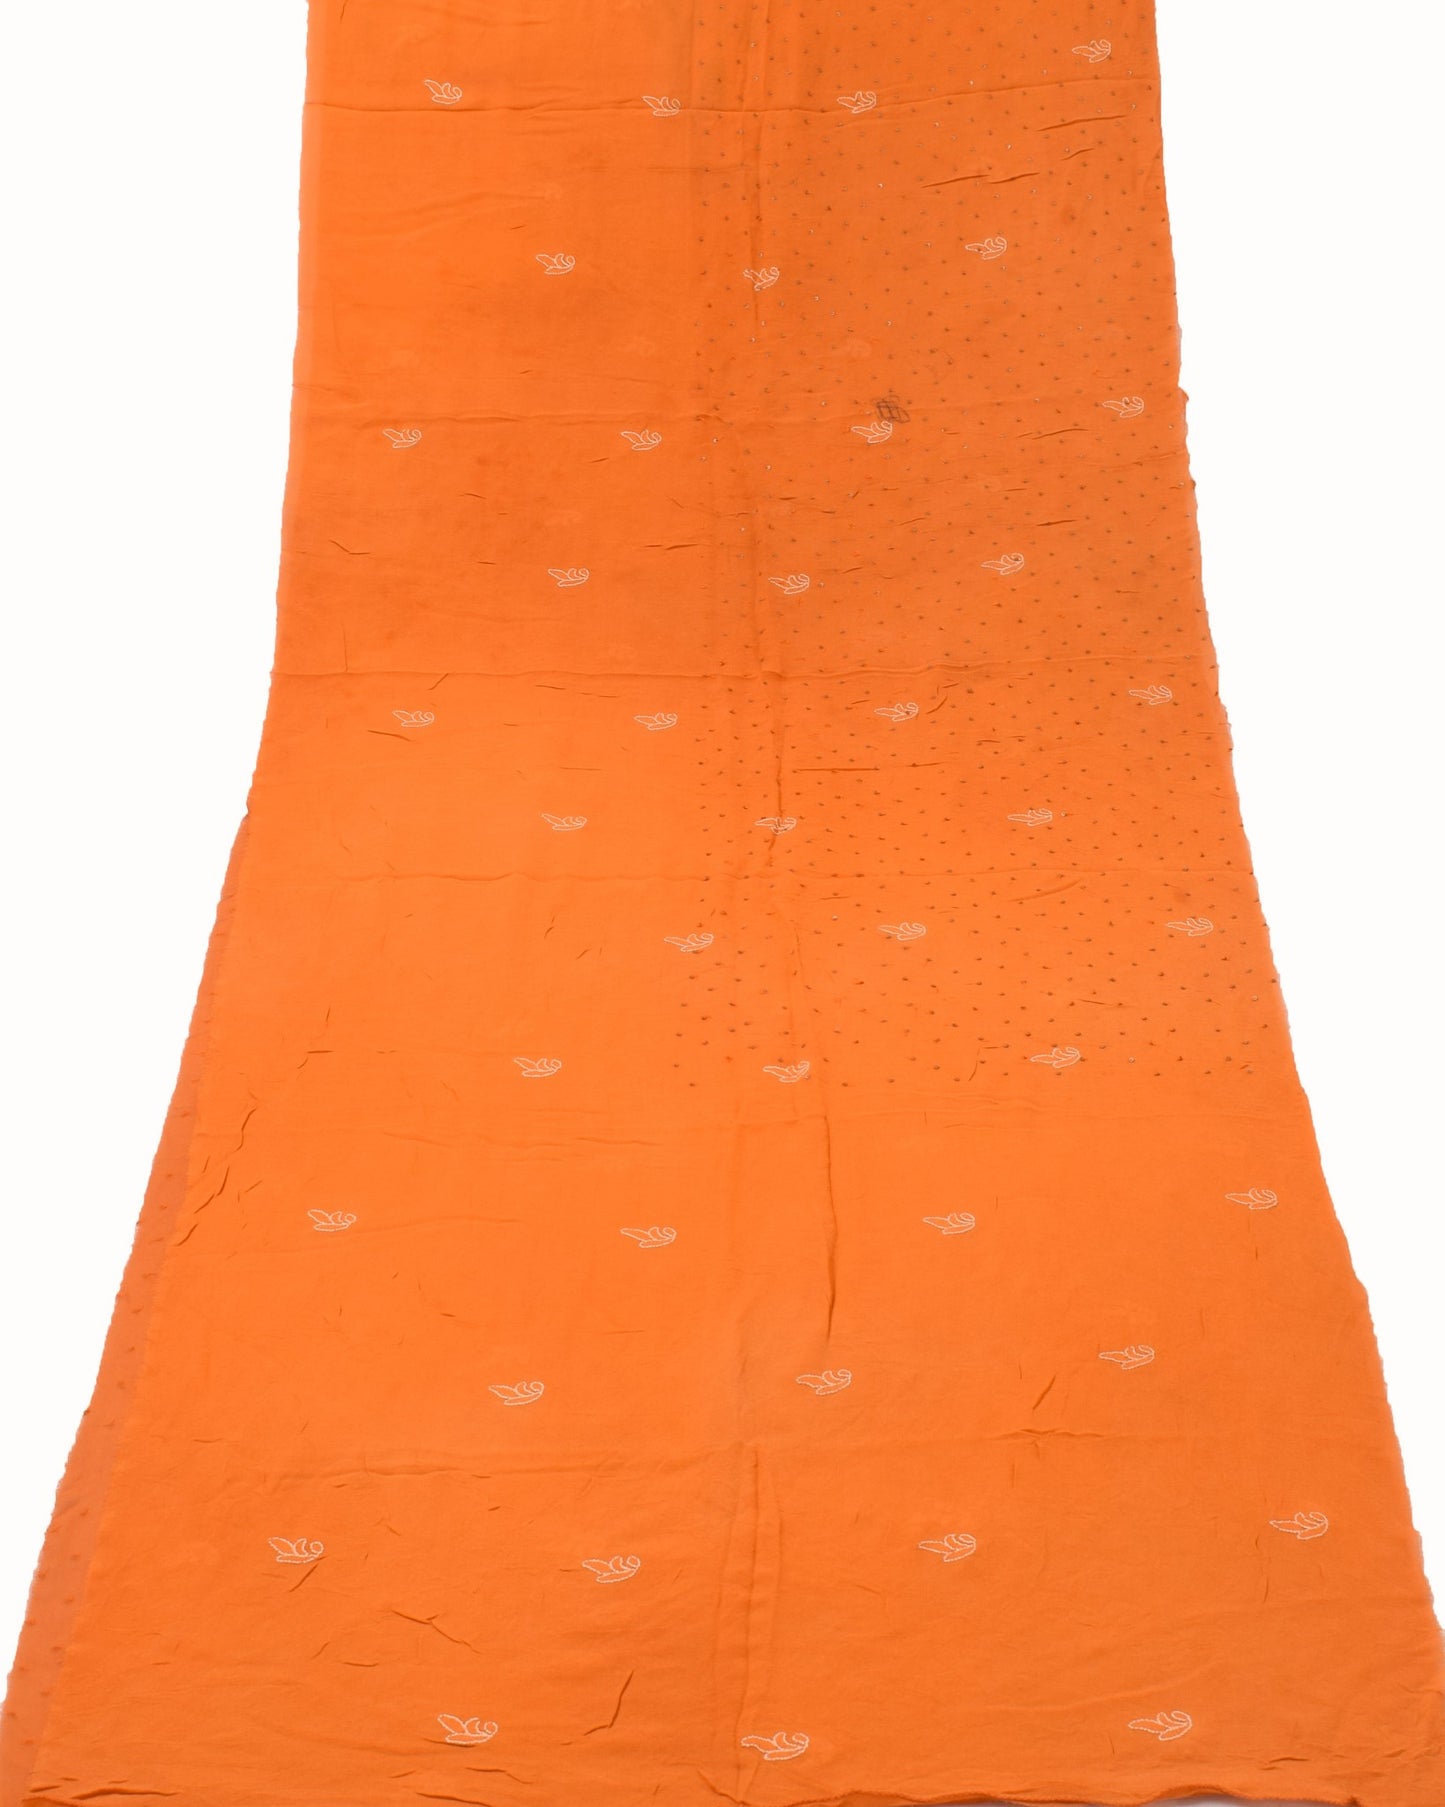 Sushila Vintage Orange Sari Remnant Scrap Multi Purpose Georgette Craft Fabric